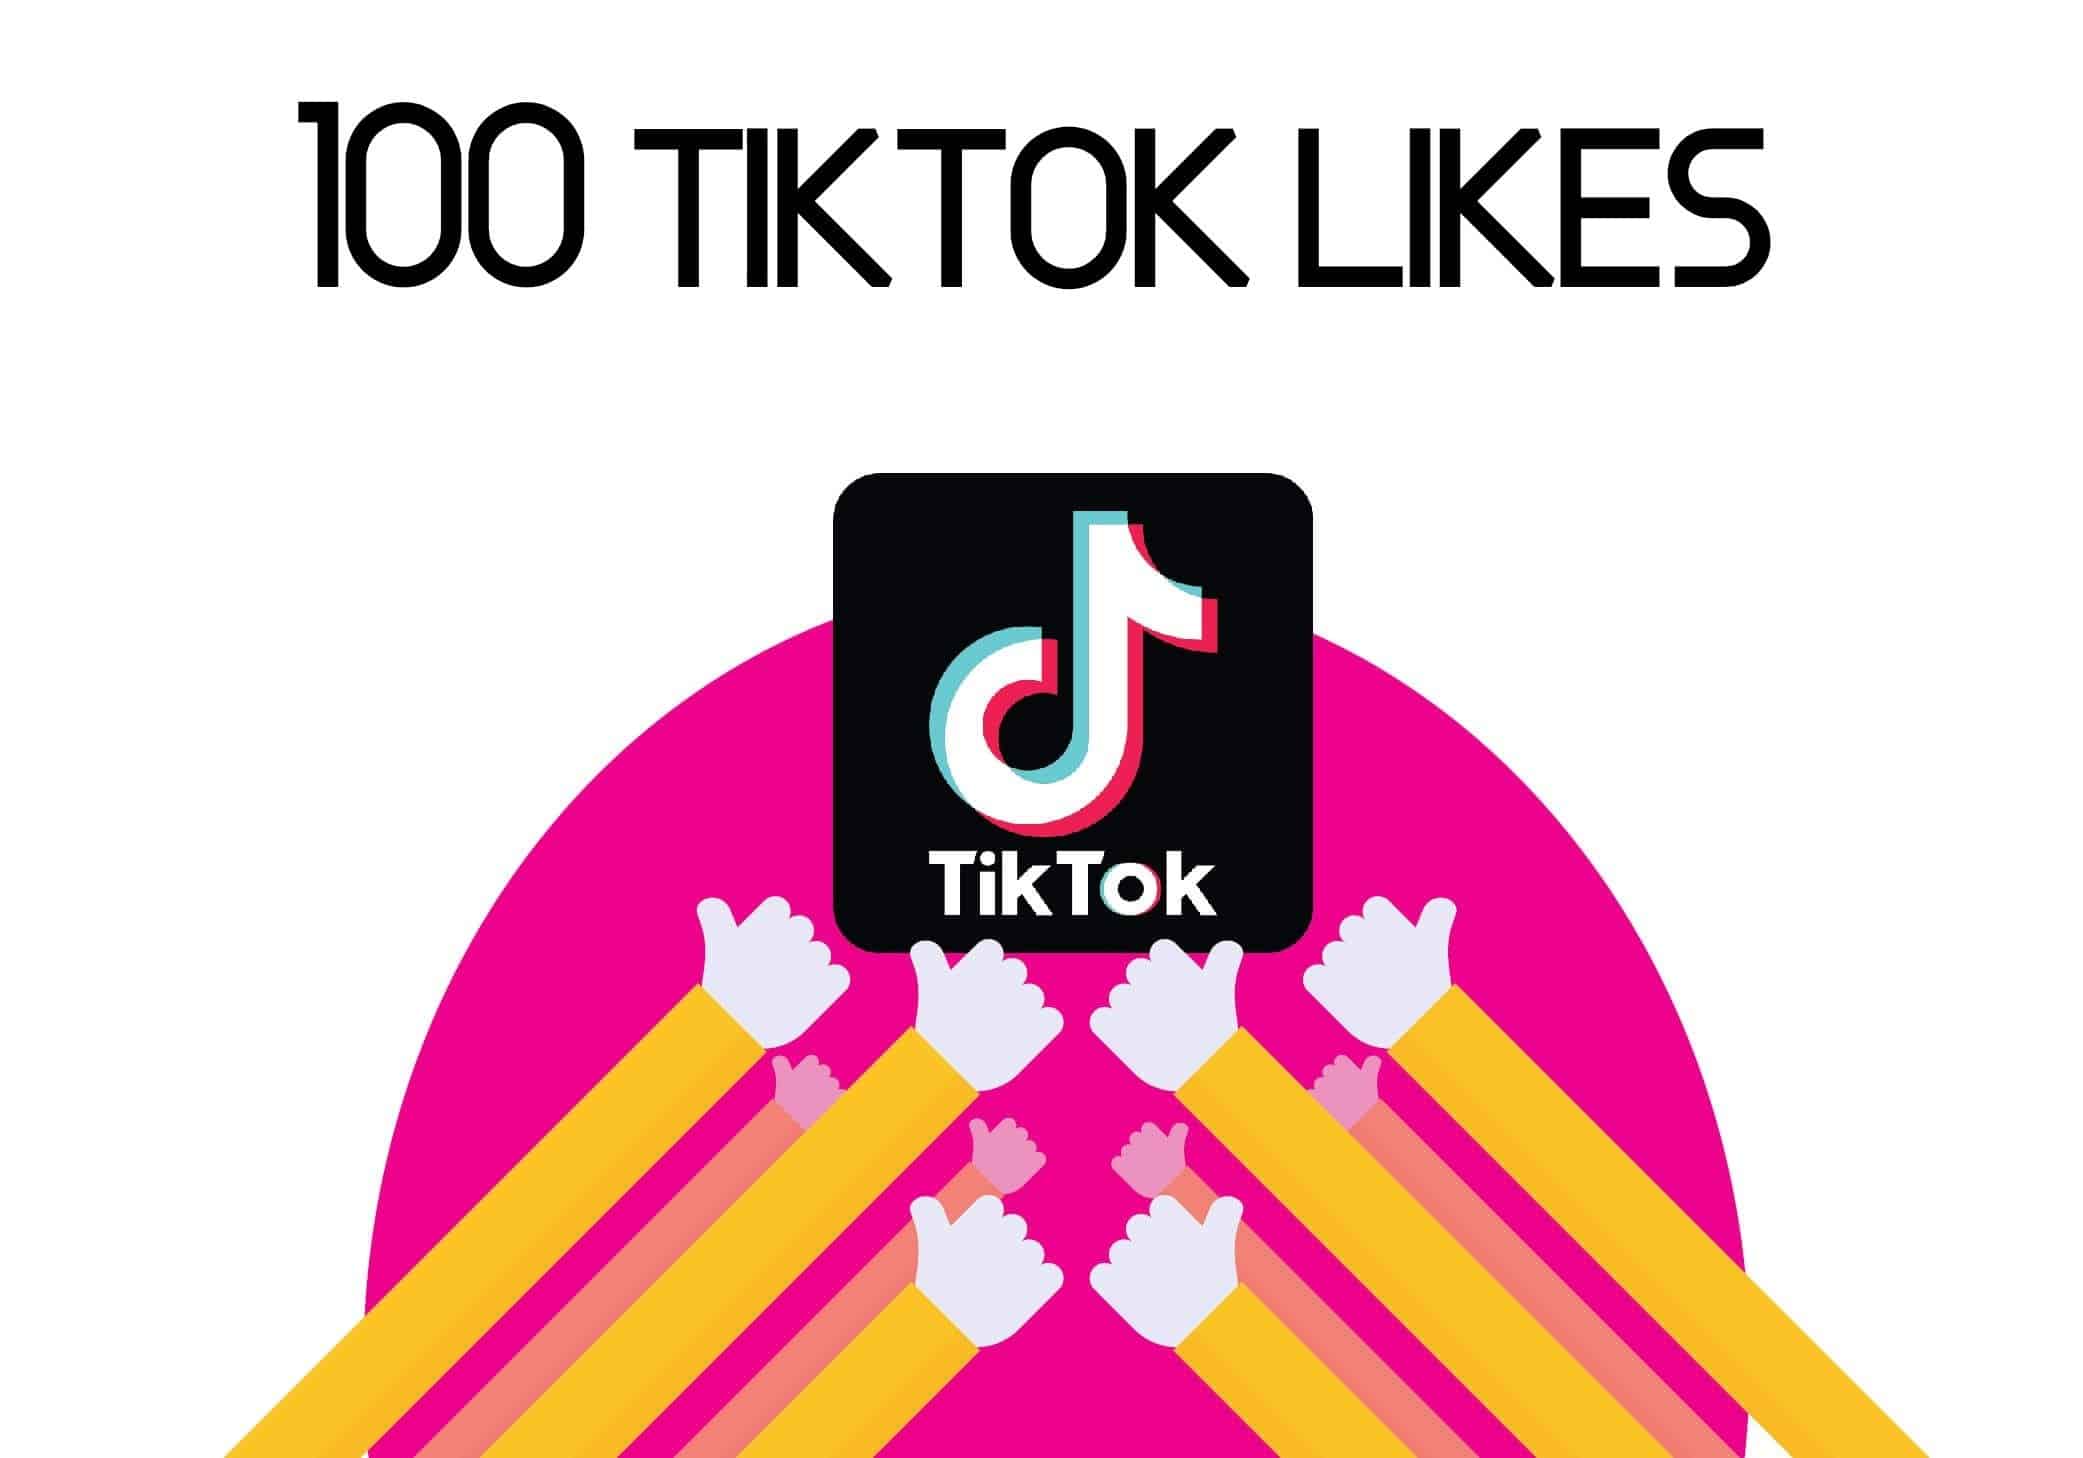 100 Tiktok likes YTVIEWS.IN